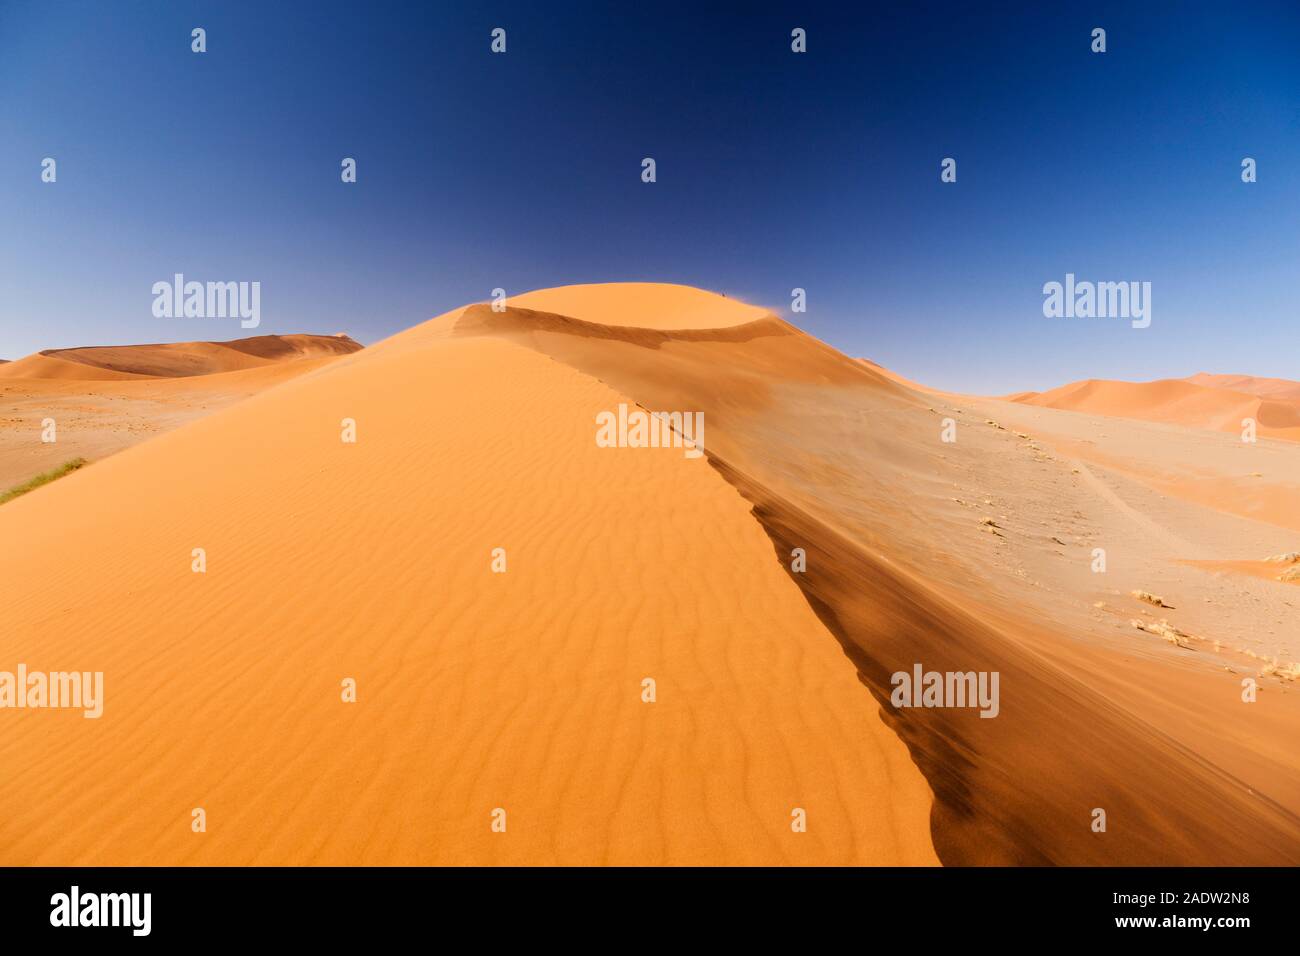 Grande dune à Sossusvlei, désert du Namib, mer de sable du Namib, parc national du Namib-Naukluft, Namibie, Afrique australe, Afrique Banque D'Images